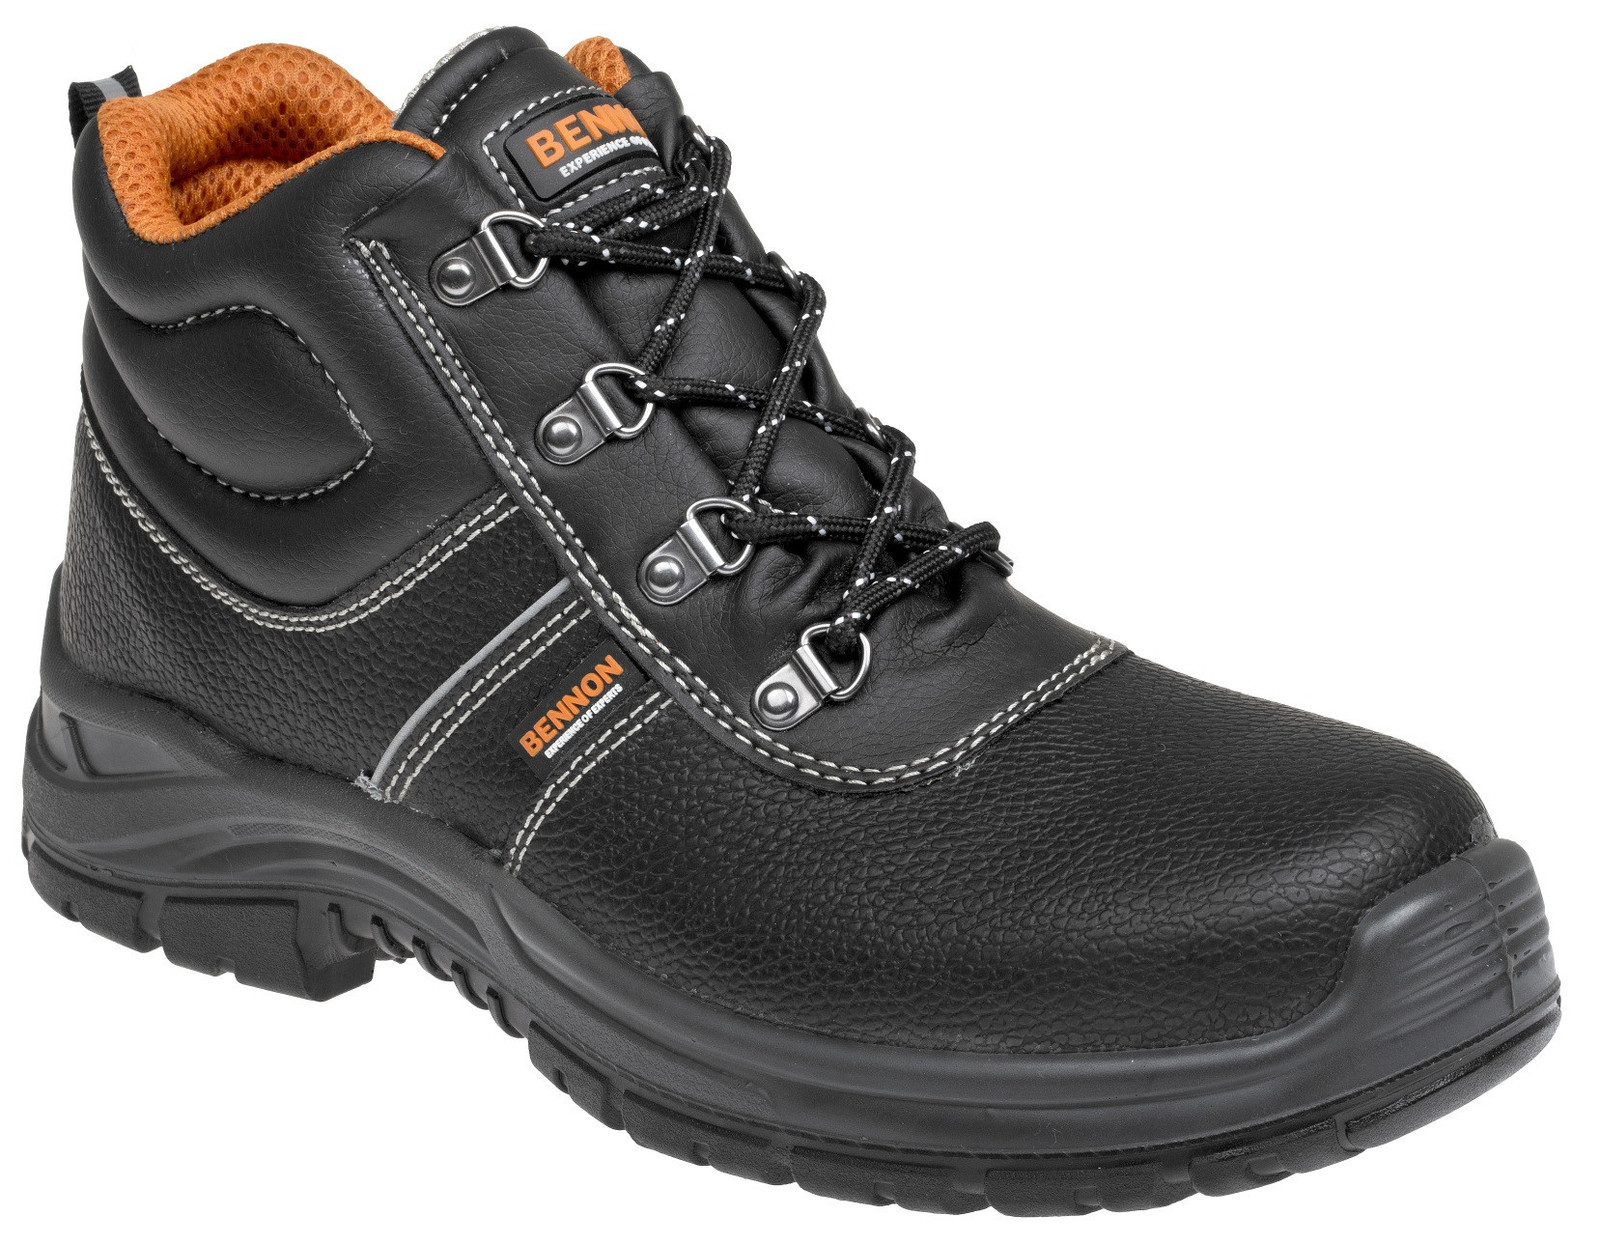 Bezpečnostná obuv Bennon Basic S3 - veľkosť: 49, farba: čierna